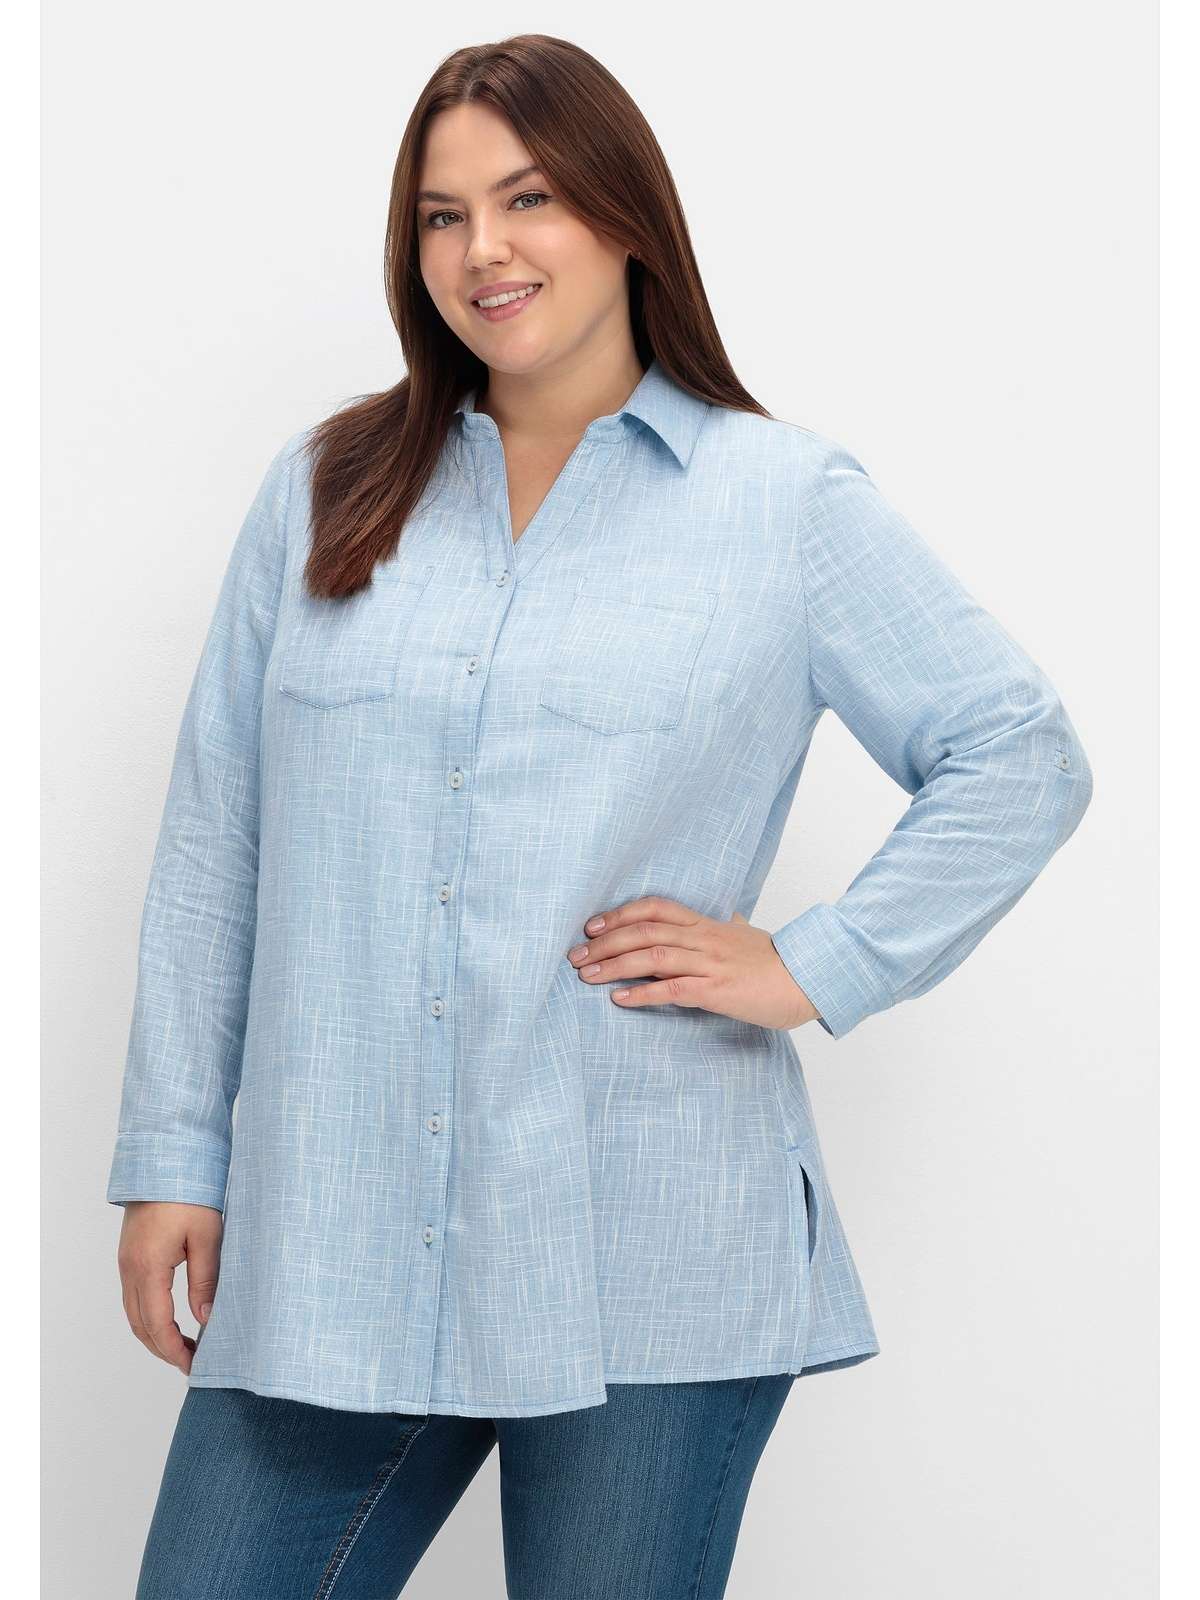 Блузка-рубашка с закатанными рукавами в льняном исполнении